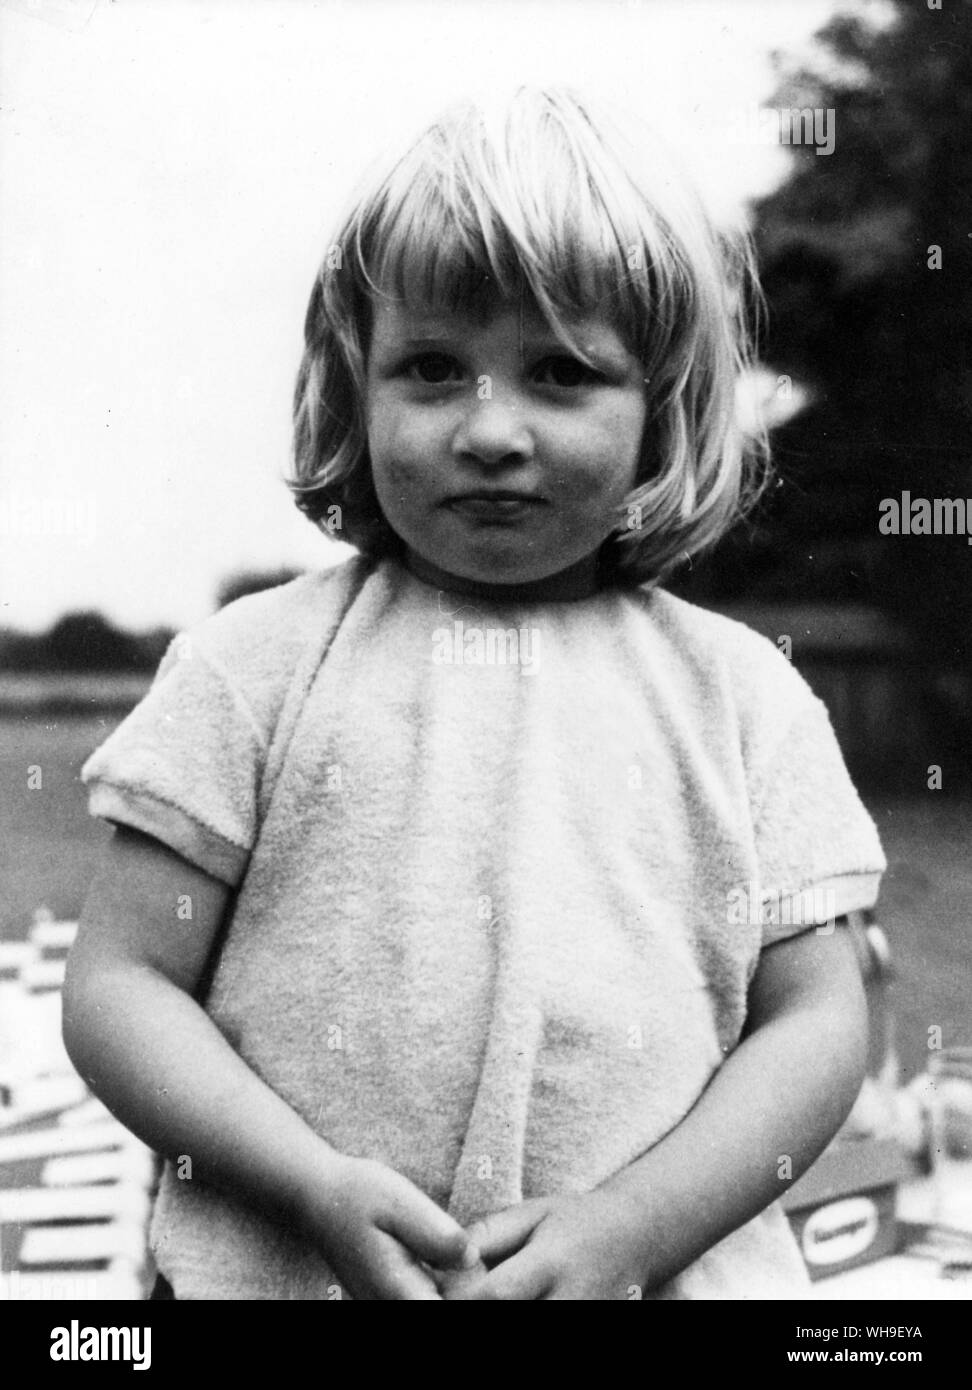 Lady Diana Spencer (1961-1997), âgée de 2 ans. Elle tue Charles prince de Galles en juillet 1991 pour devenir la princesse Diana. Elle s'est séparée et plus tard divorcé de lui. Banque D'Images